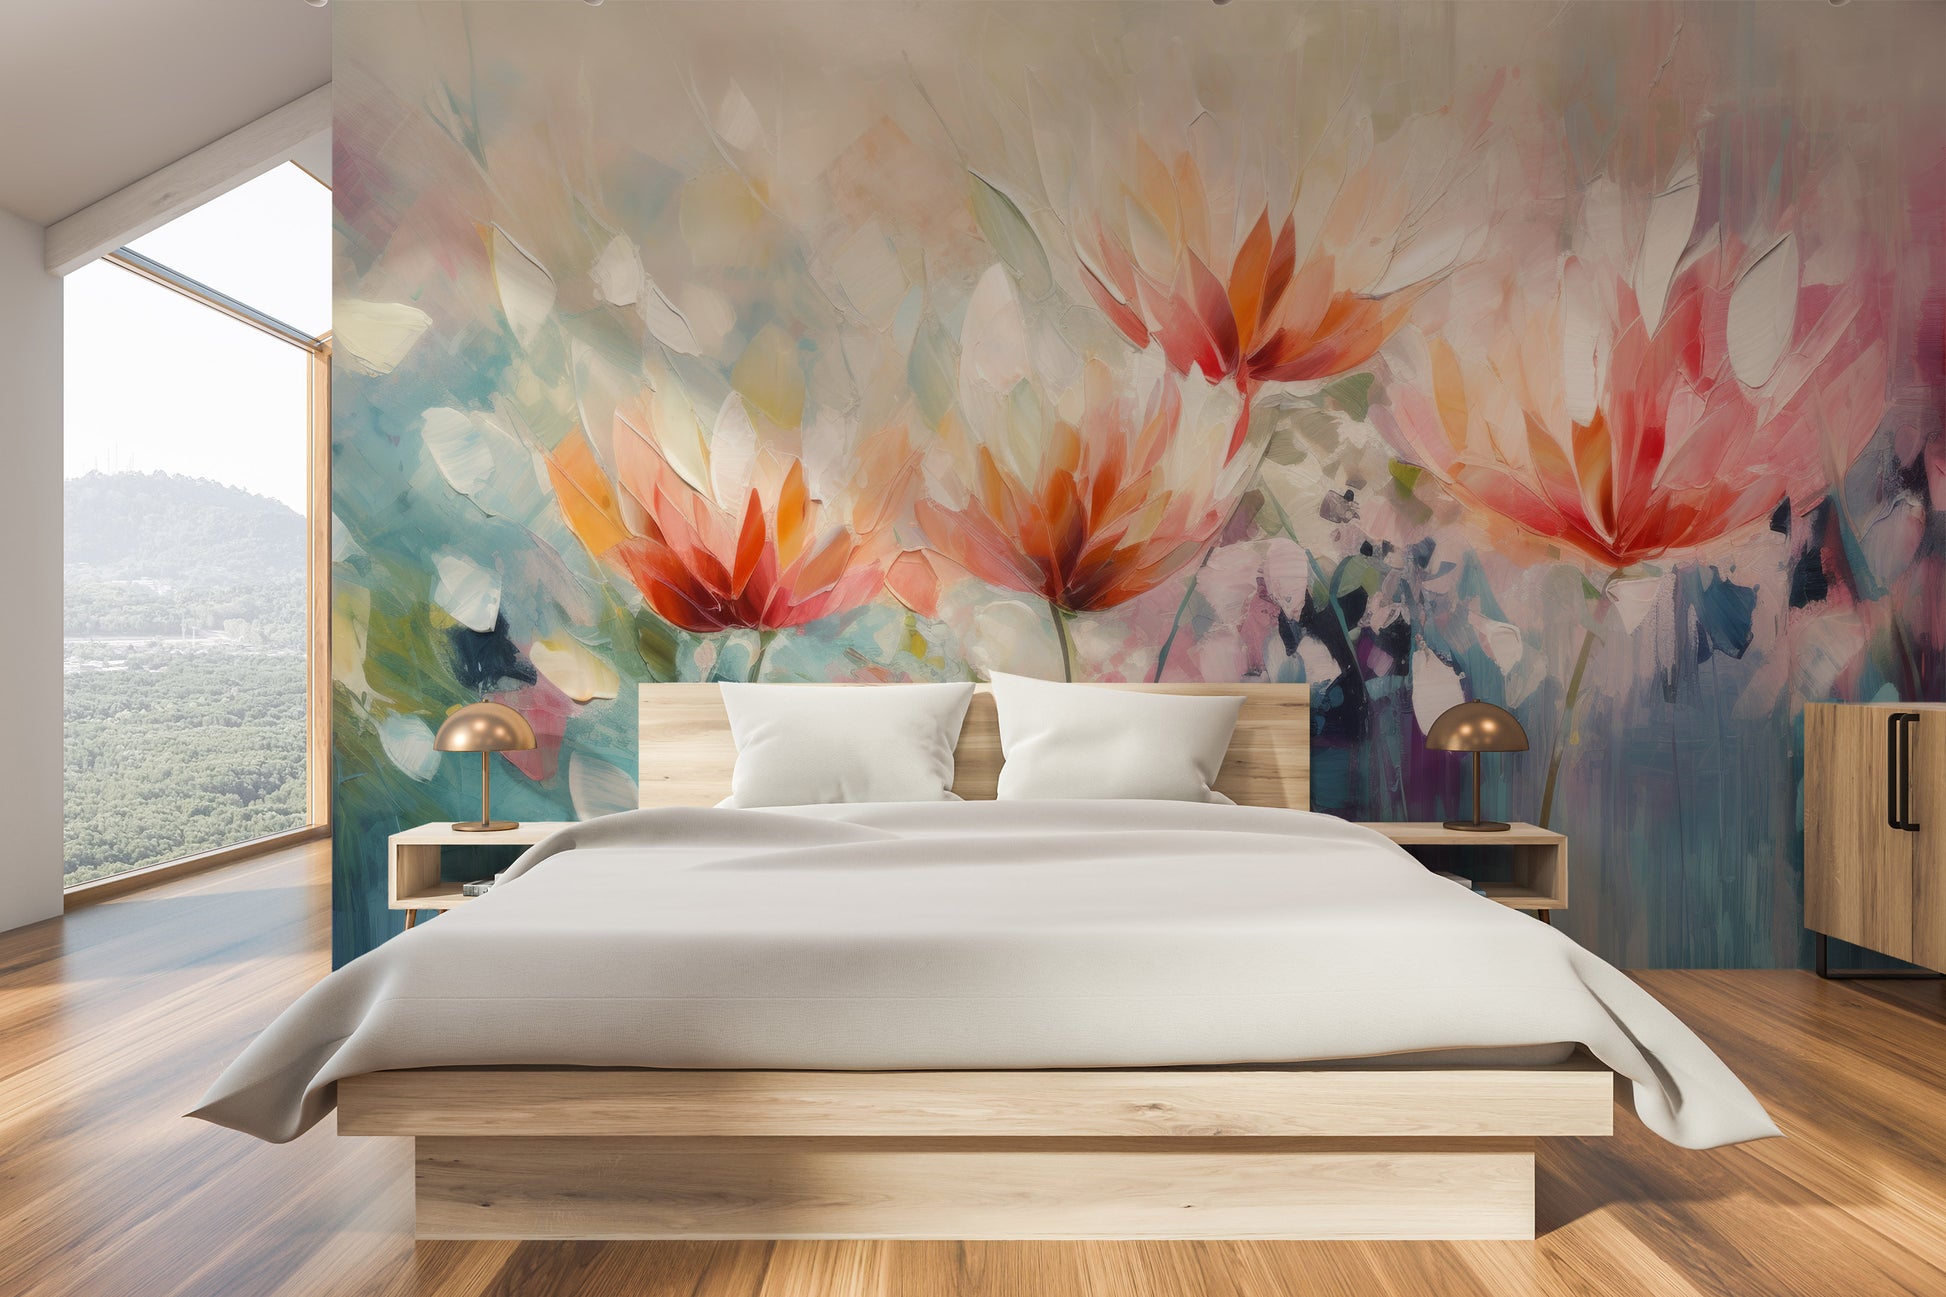 Fototapeta malowana o nazwie Vibrant Floral Symphony pokazana w aranżacji wnętrza.